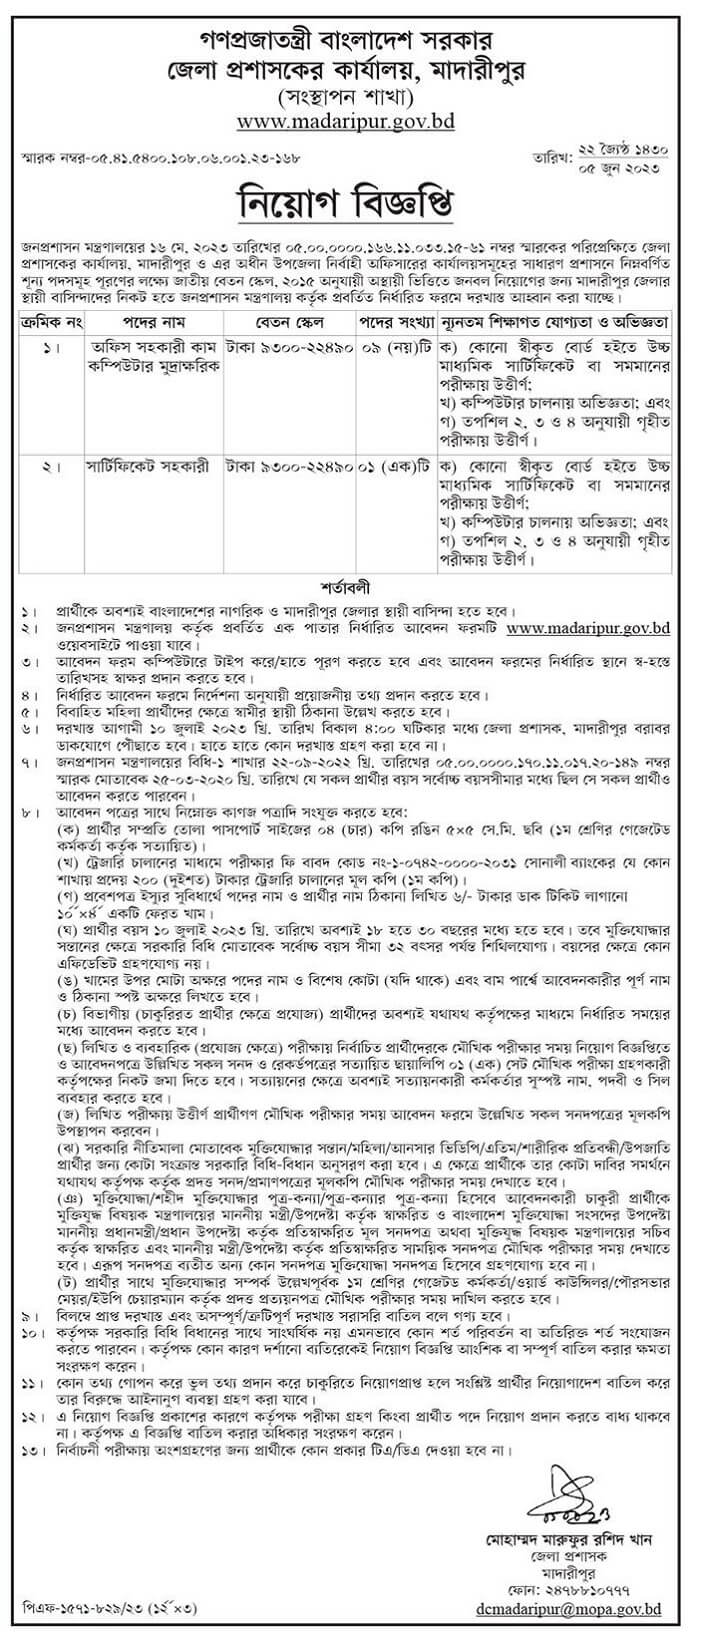 জেলা প্রশাসকের কার্যালয়ে নিয়োগ বিজ্ঞপ্তি ২০২৩ | Recruitment Circular 2023 in District Commissioner's Office